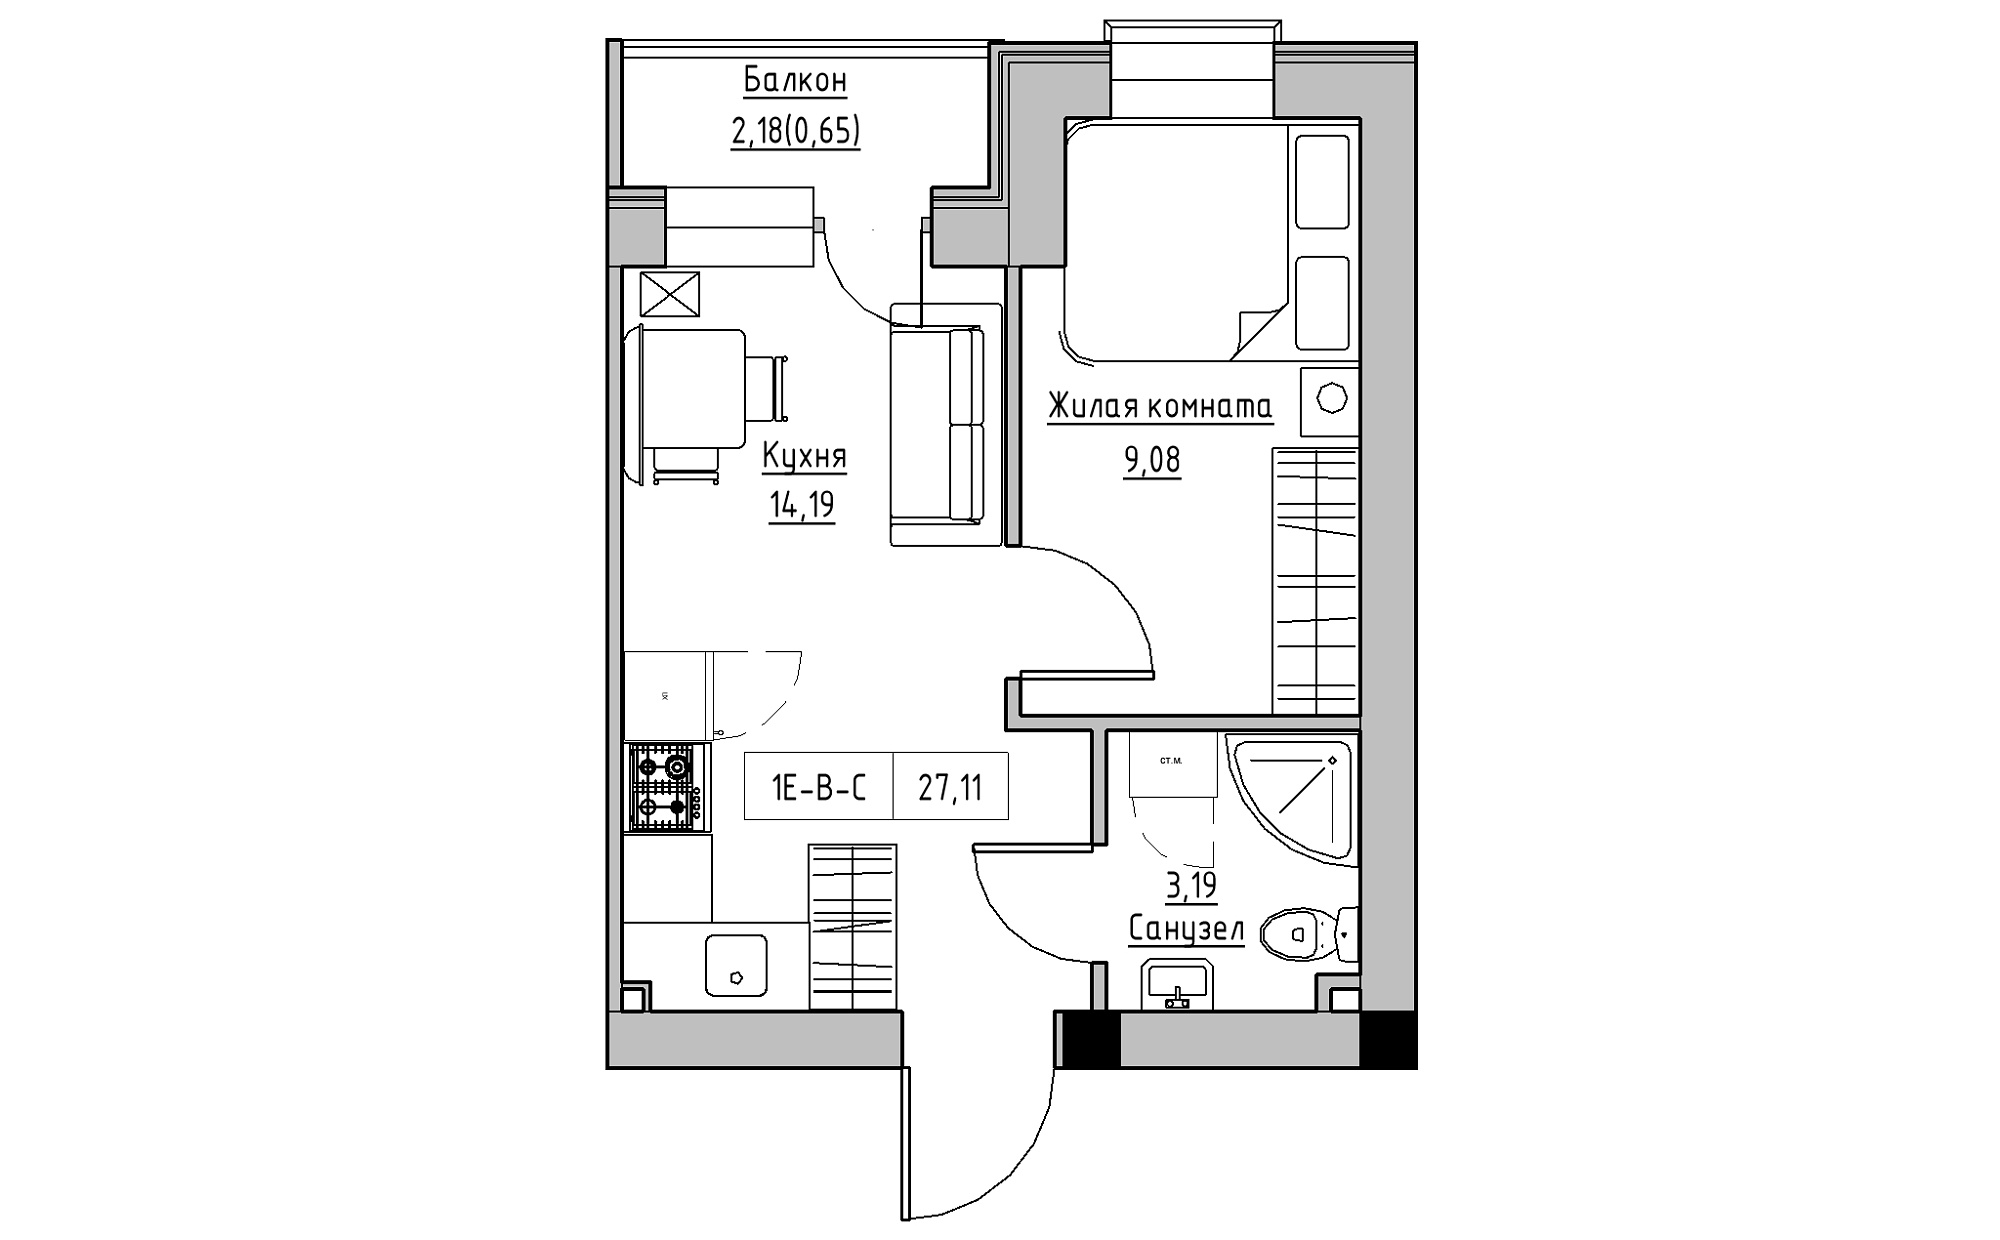 Планировка 1-к квартира площей 27.11м2, KS-022-05/0008.